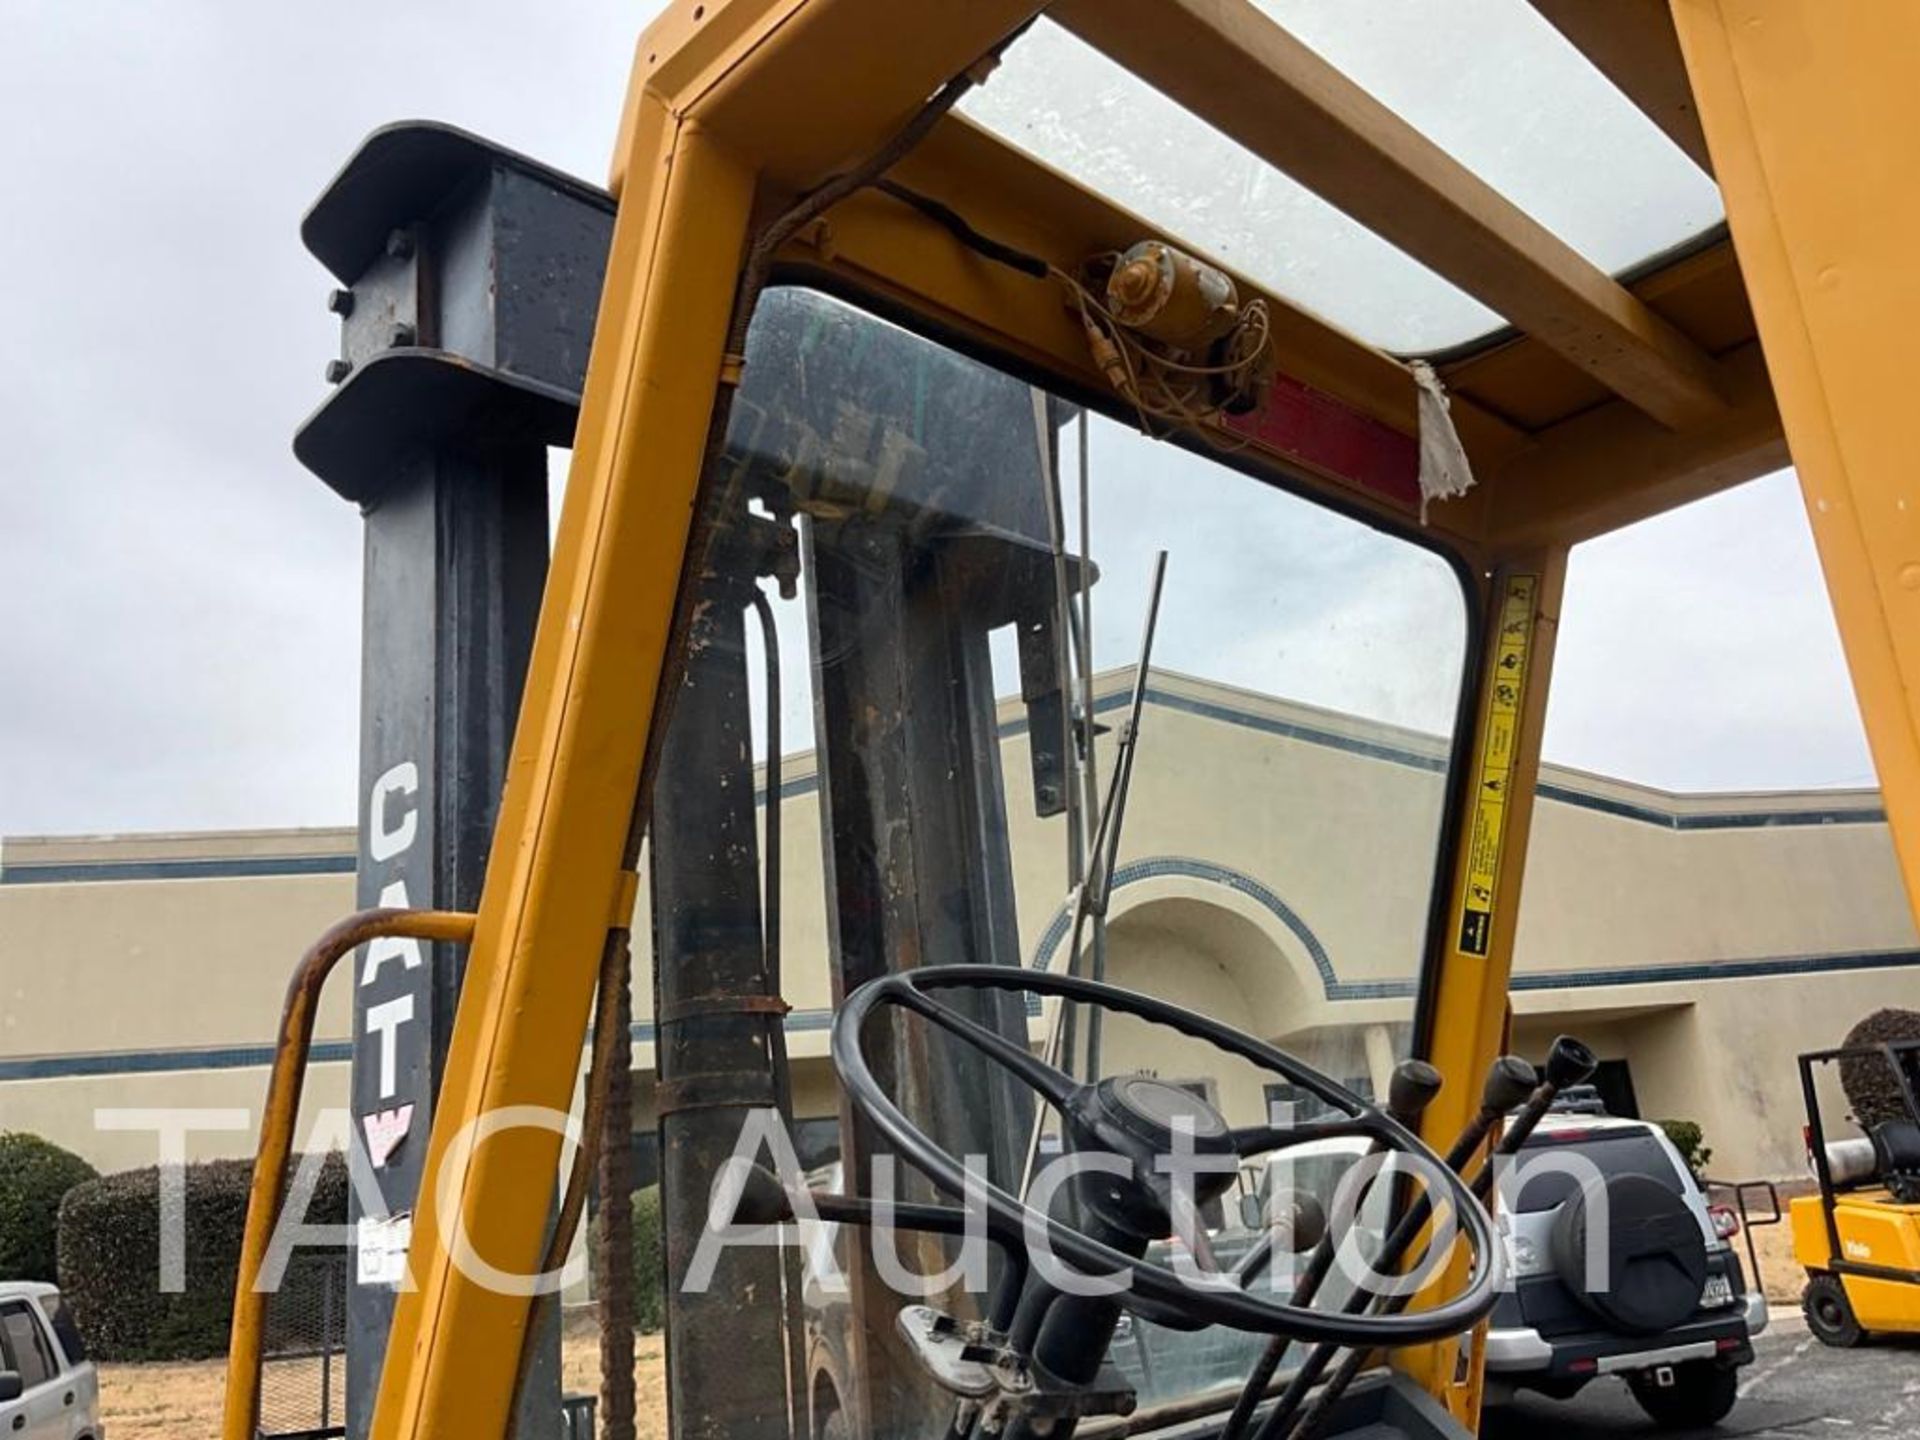 CAT V130 13000lb Forklift - Image 12 of 32